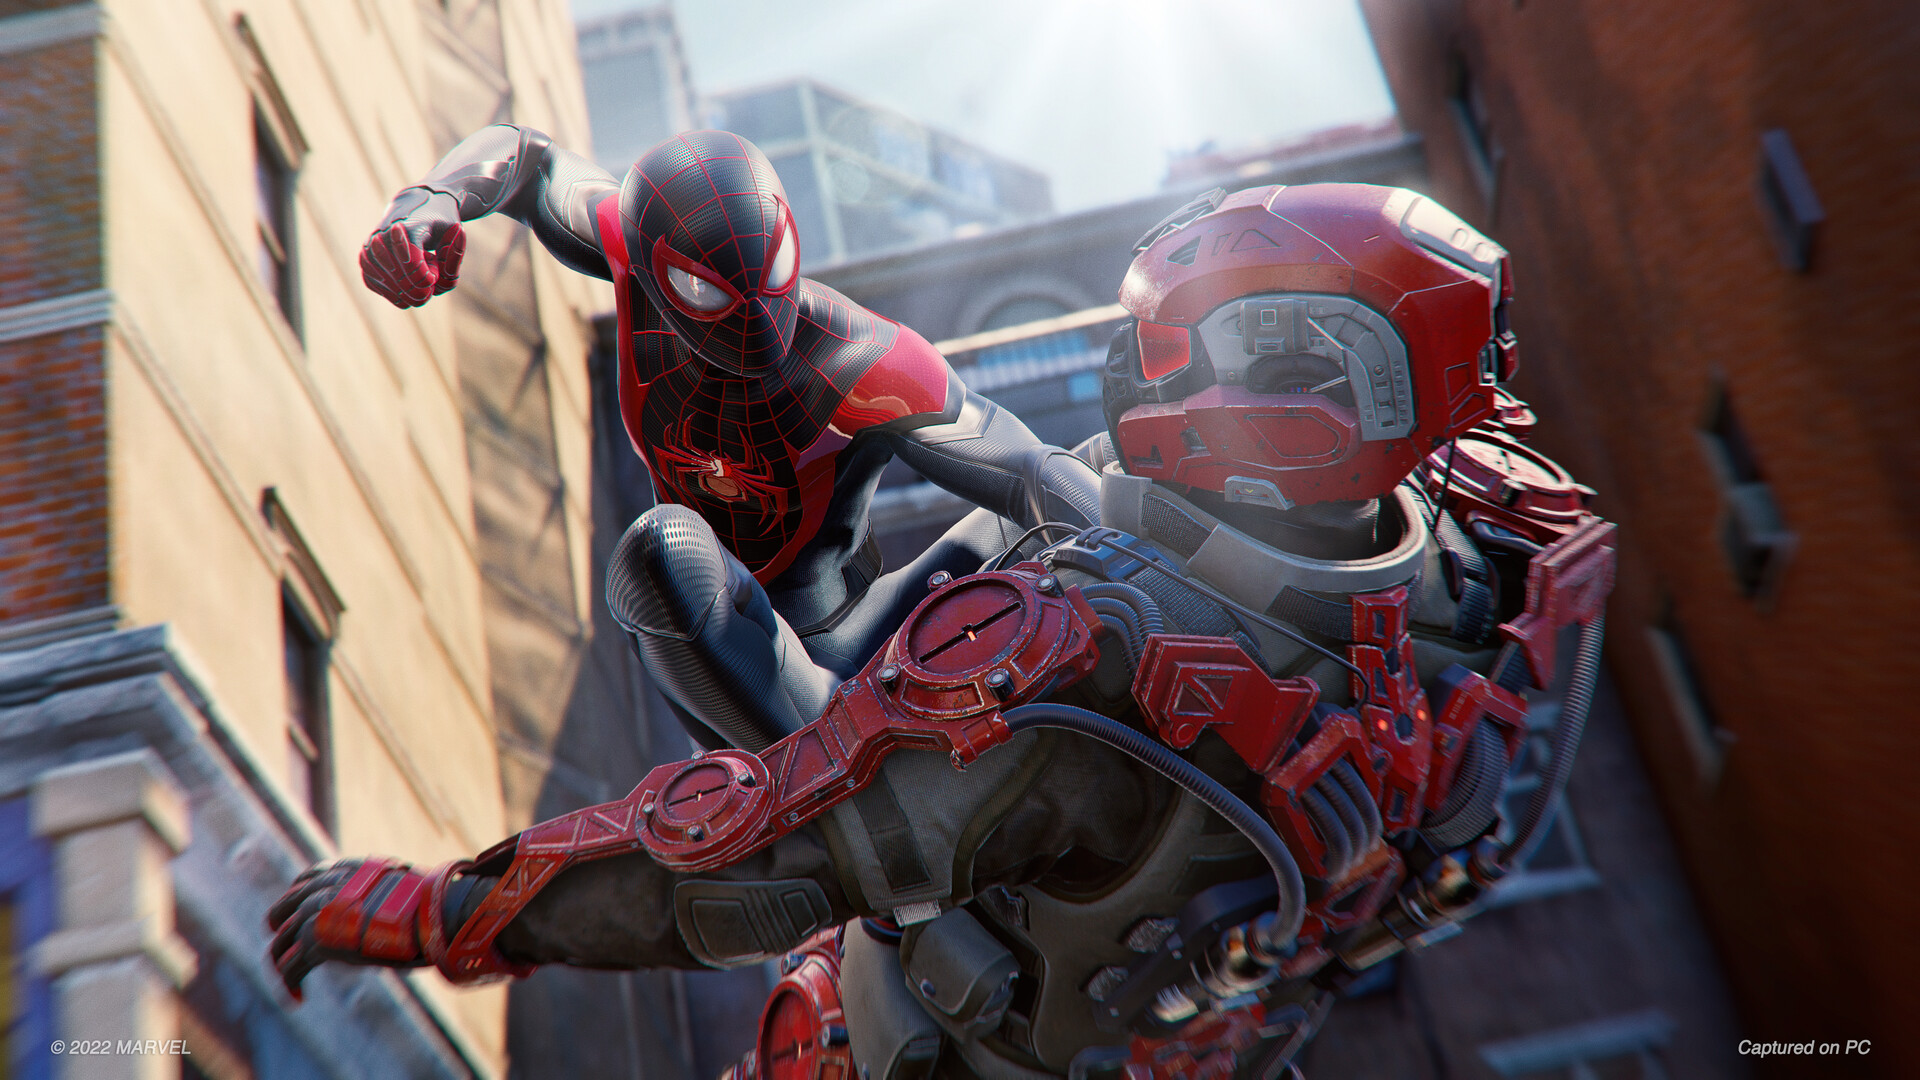 É oficial! Marvel’s Spider-Man: Miles Morales chegará em breve aos PCs 2022 Viciados